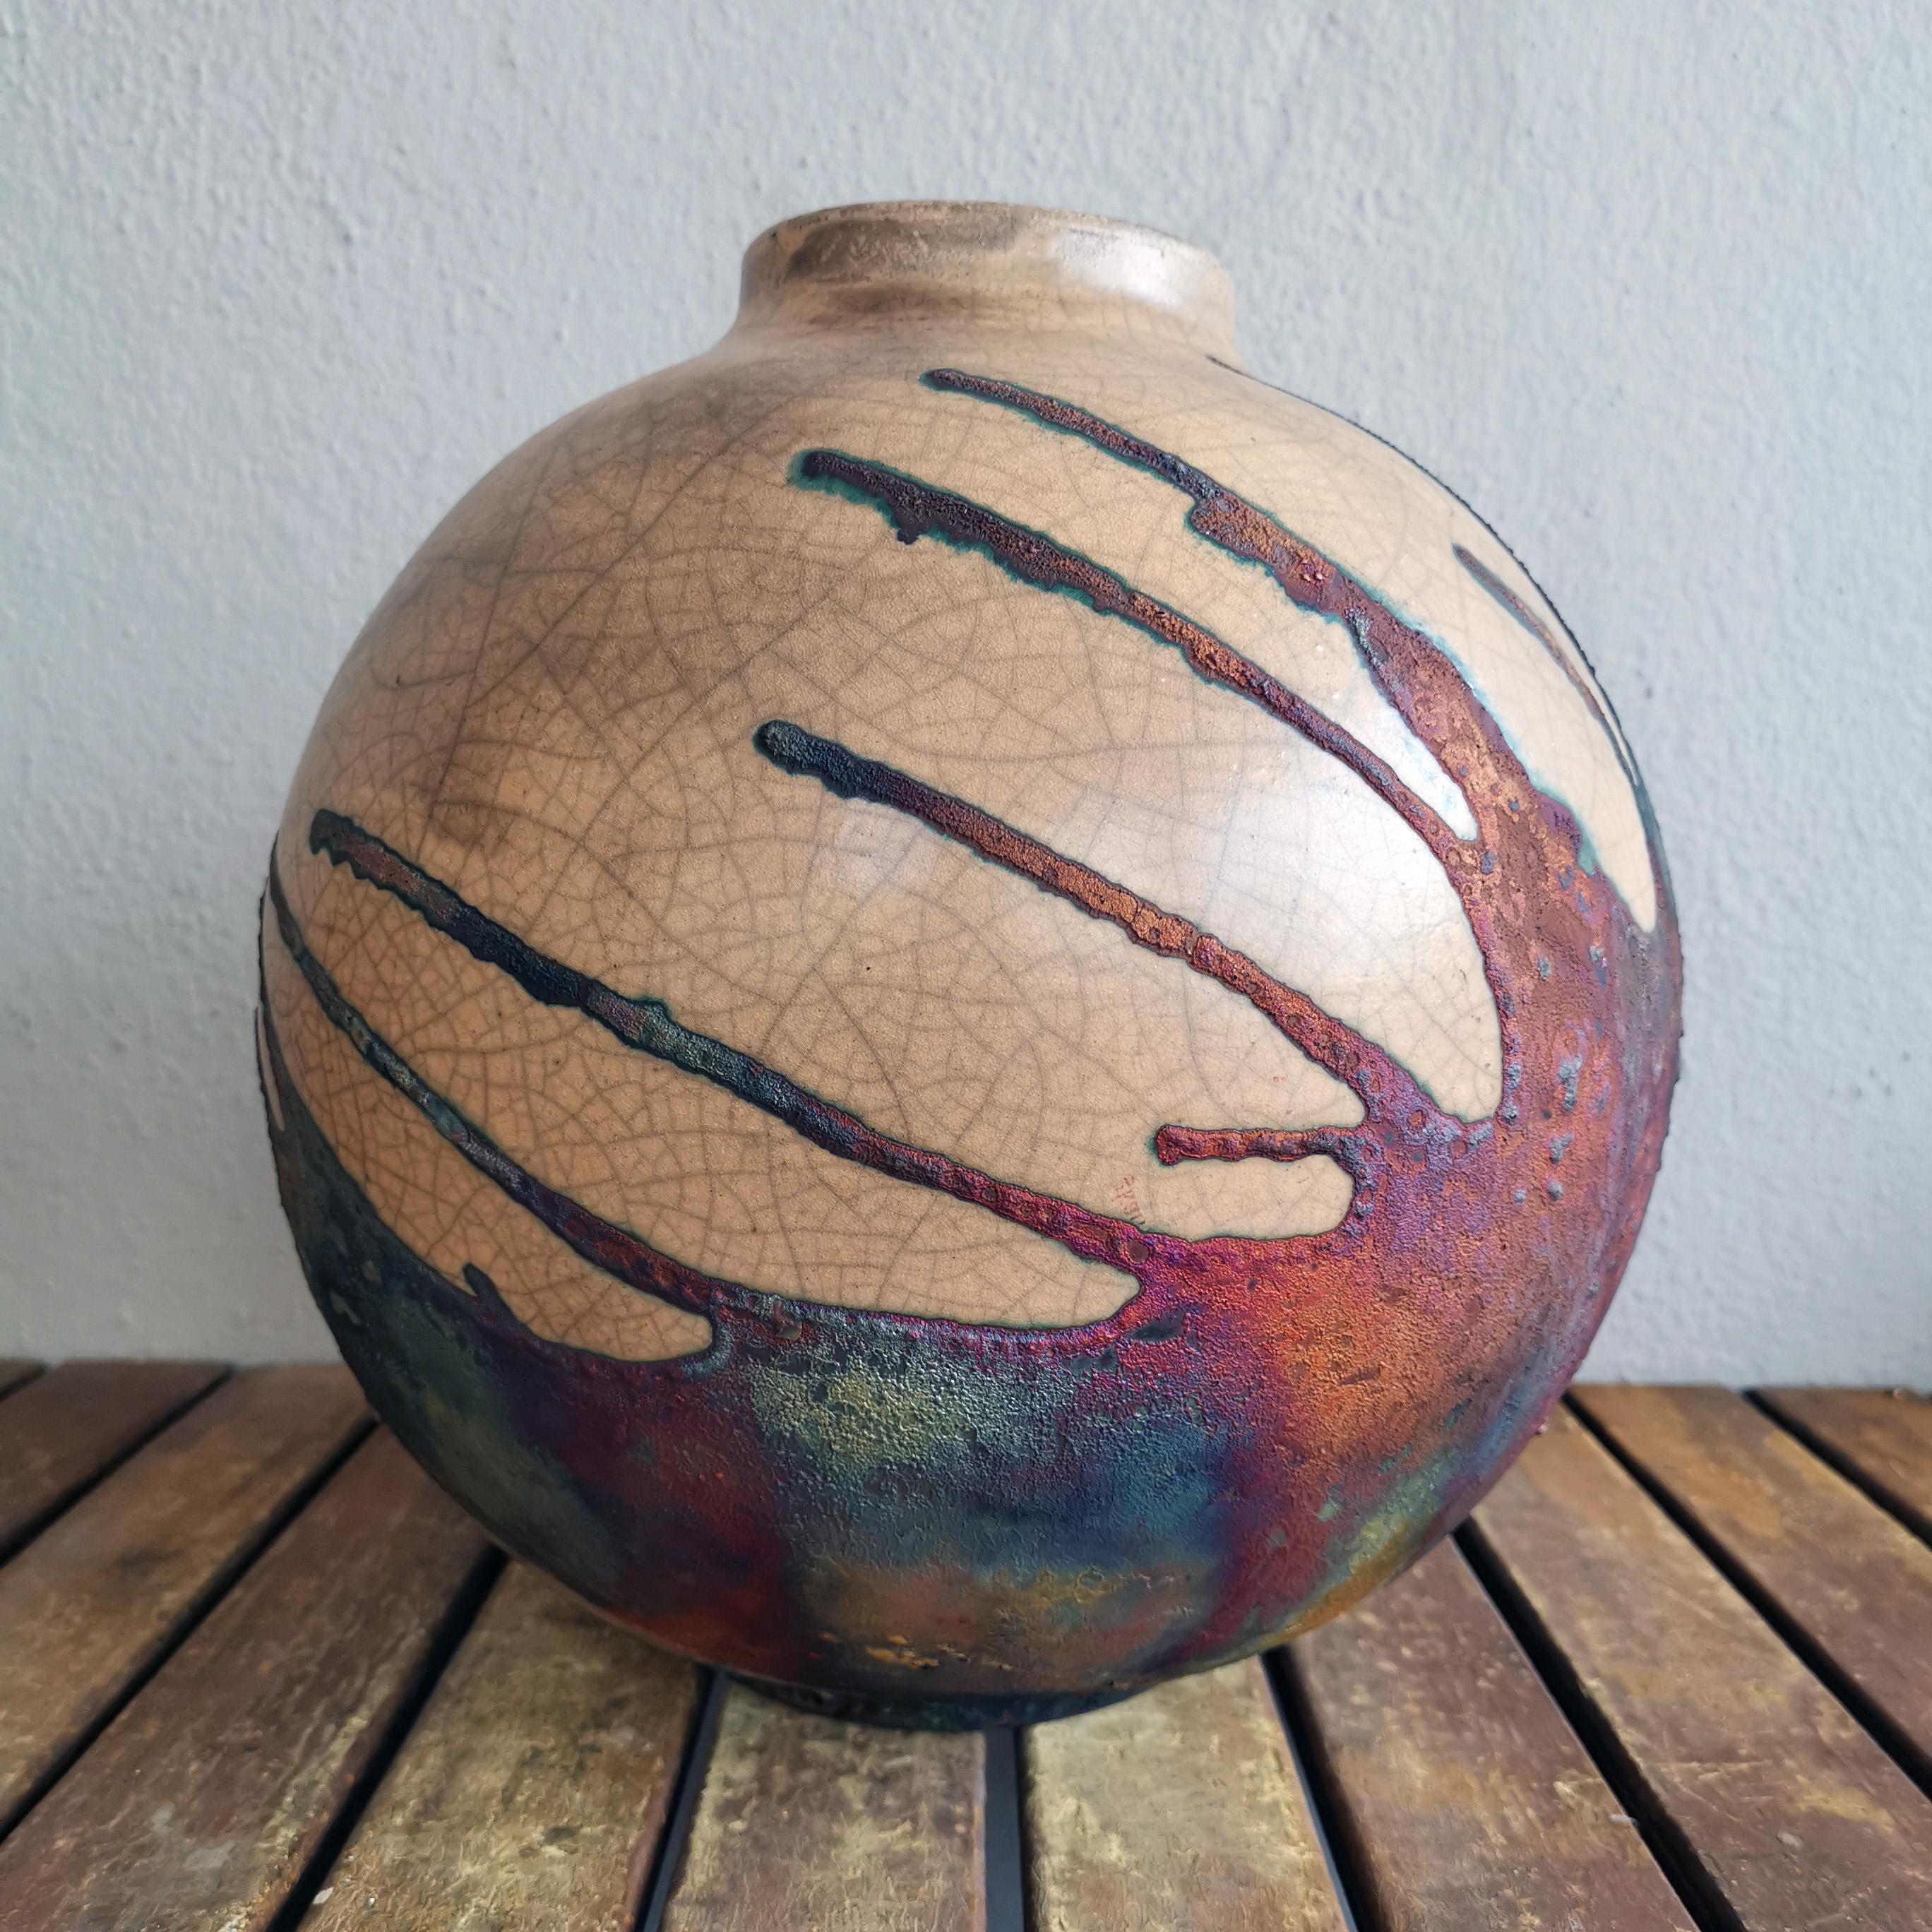 Ein faszinierender Anblick, sobald die regenbogenartigen Patinas ins Auge fallen. Diese Globe Vase ist ein rundes, geräumiges Stück, das mit der Raku-Technik hergestellt wird, was zu einer schönen, unvorhersehbaren Oberfläche führt. Diese Vase